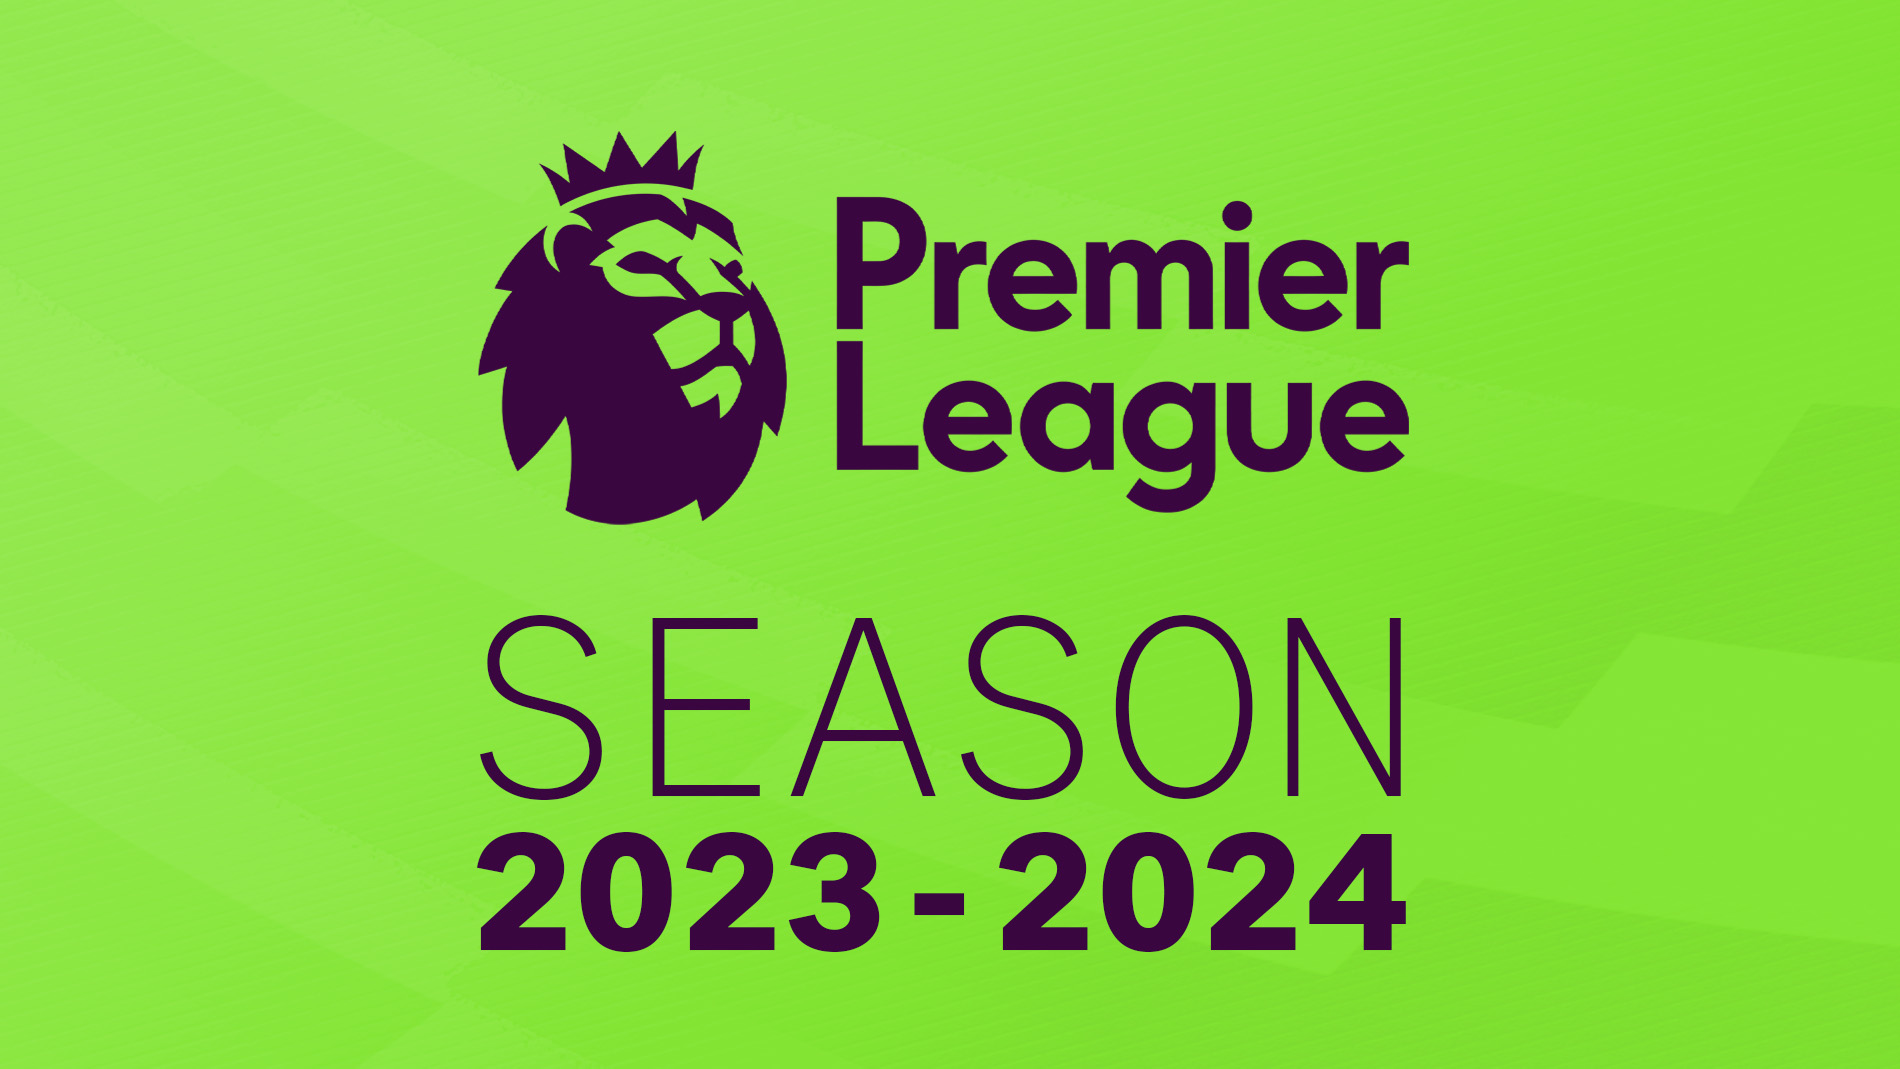 Premier League Season 2023-2024 - A complete guide.